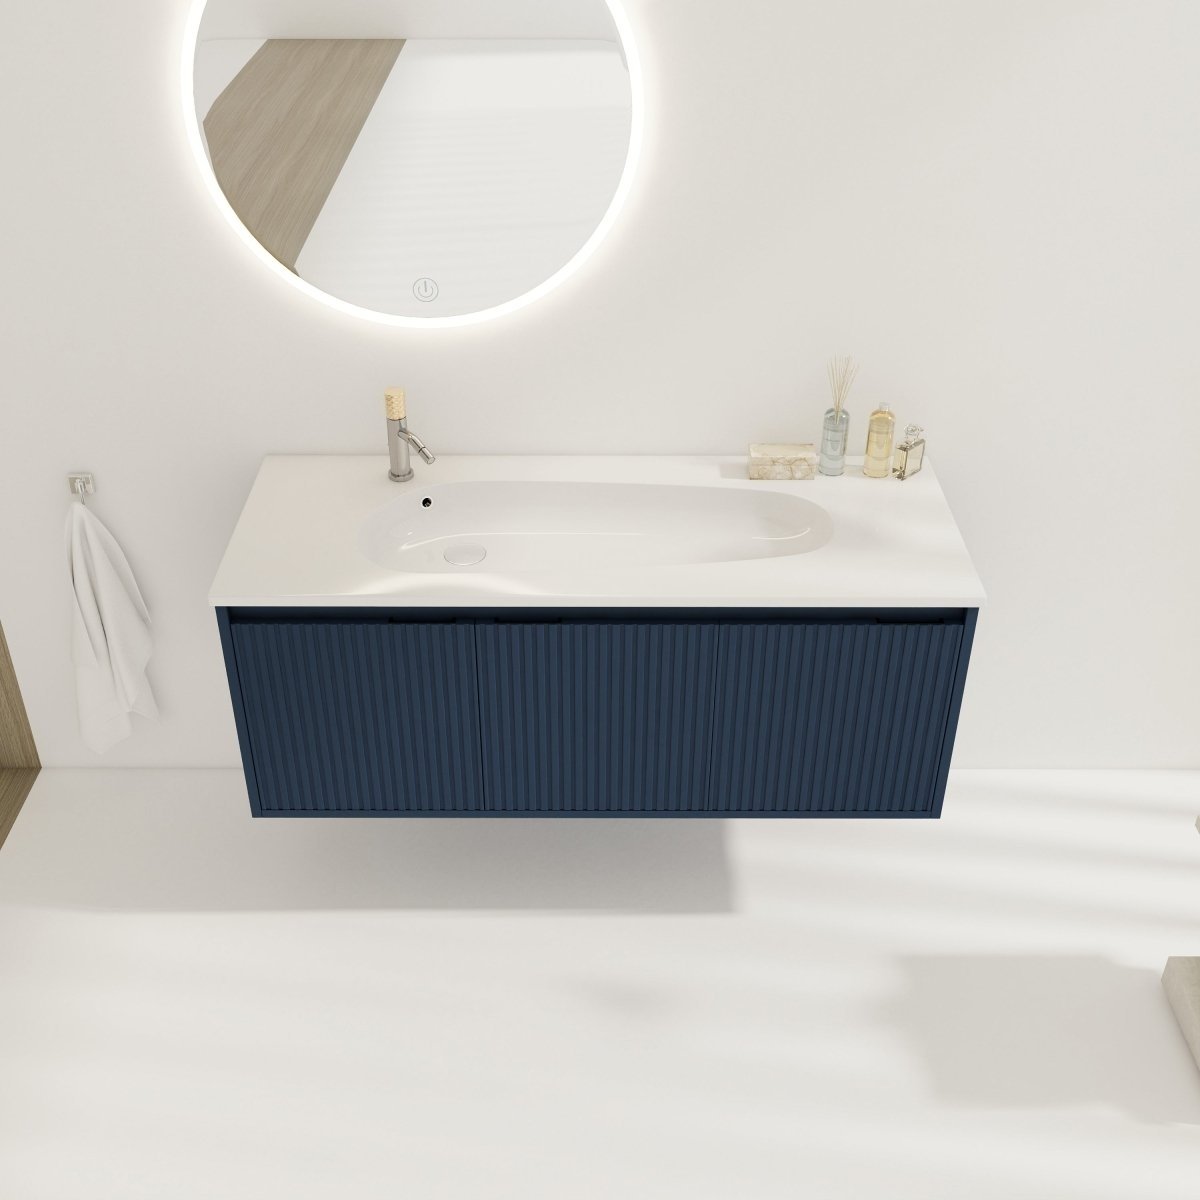 ExBrite 48 Floating Bathroom Vanity With Drop-Shaped Resin Sink